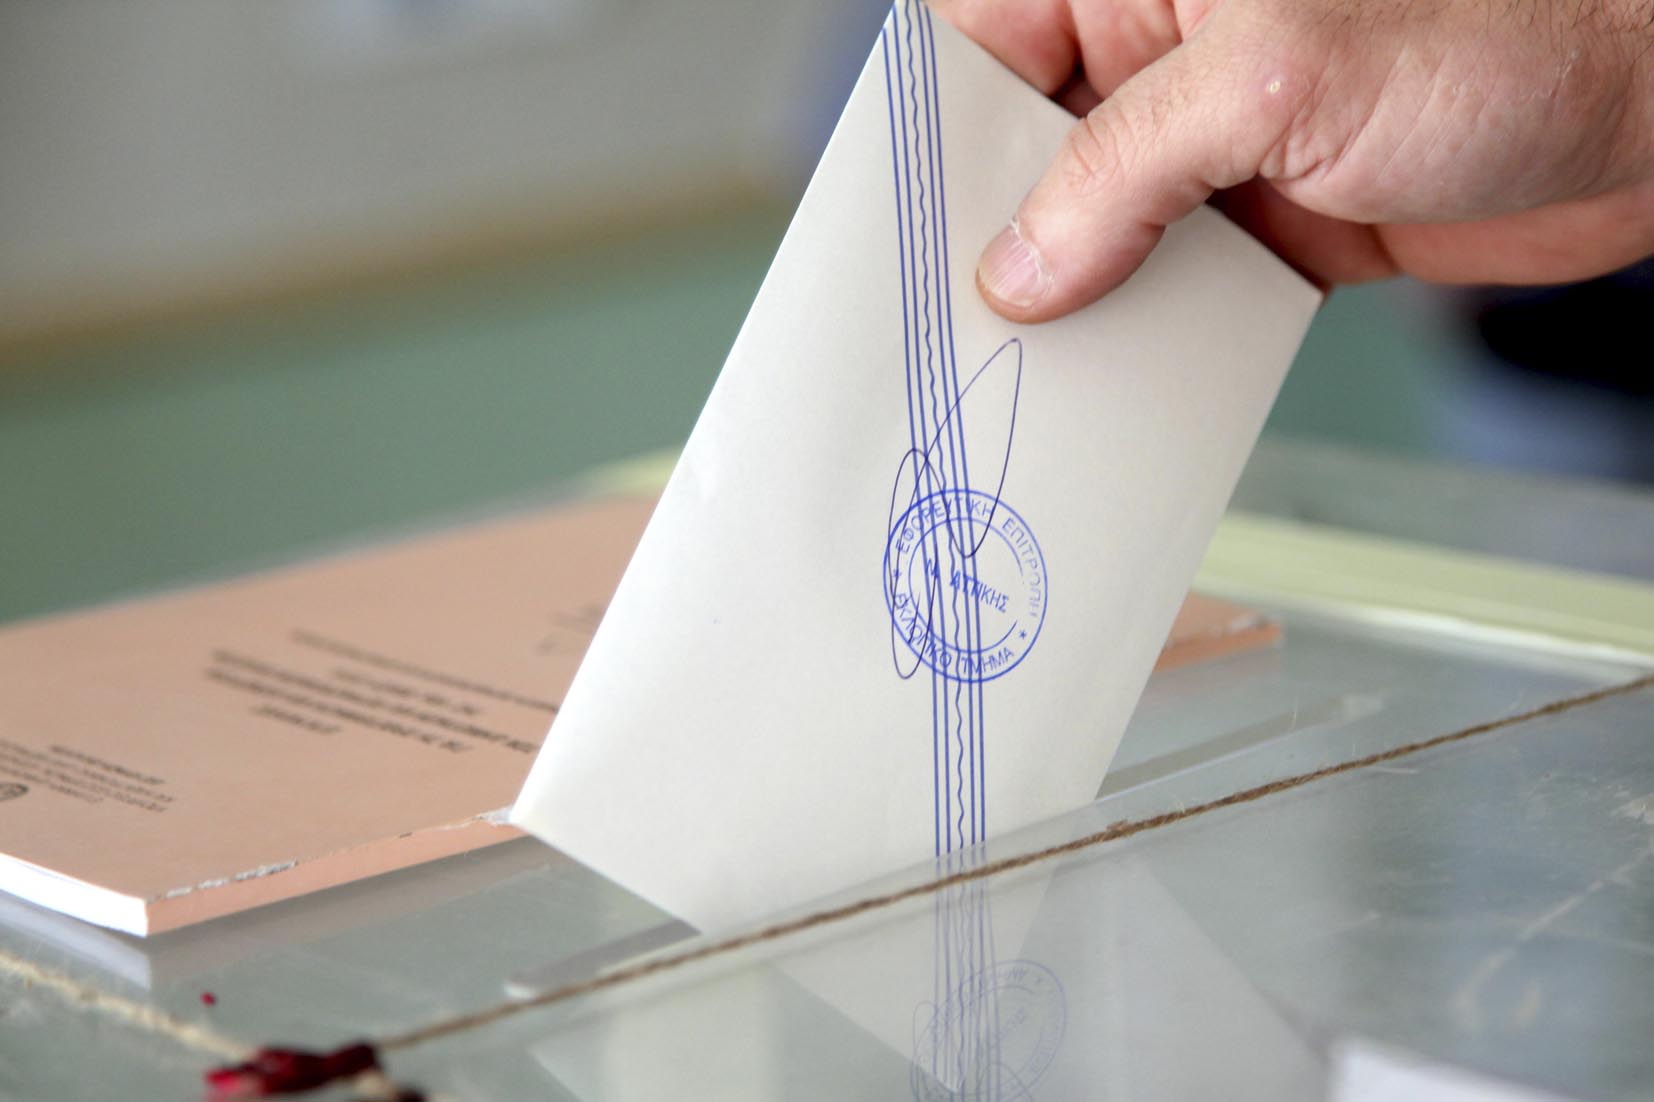 Αυτοδιοικητικές εκλογές: Έως 31 Αυγούστου η κατάθεση συνδυασμών και υποψηφίων 